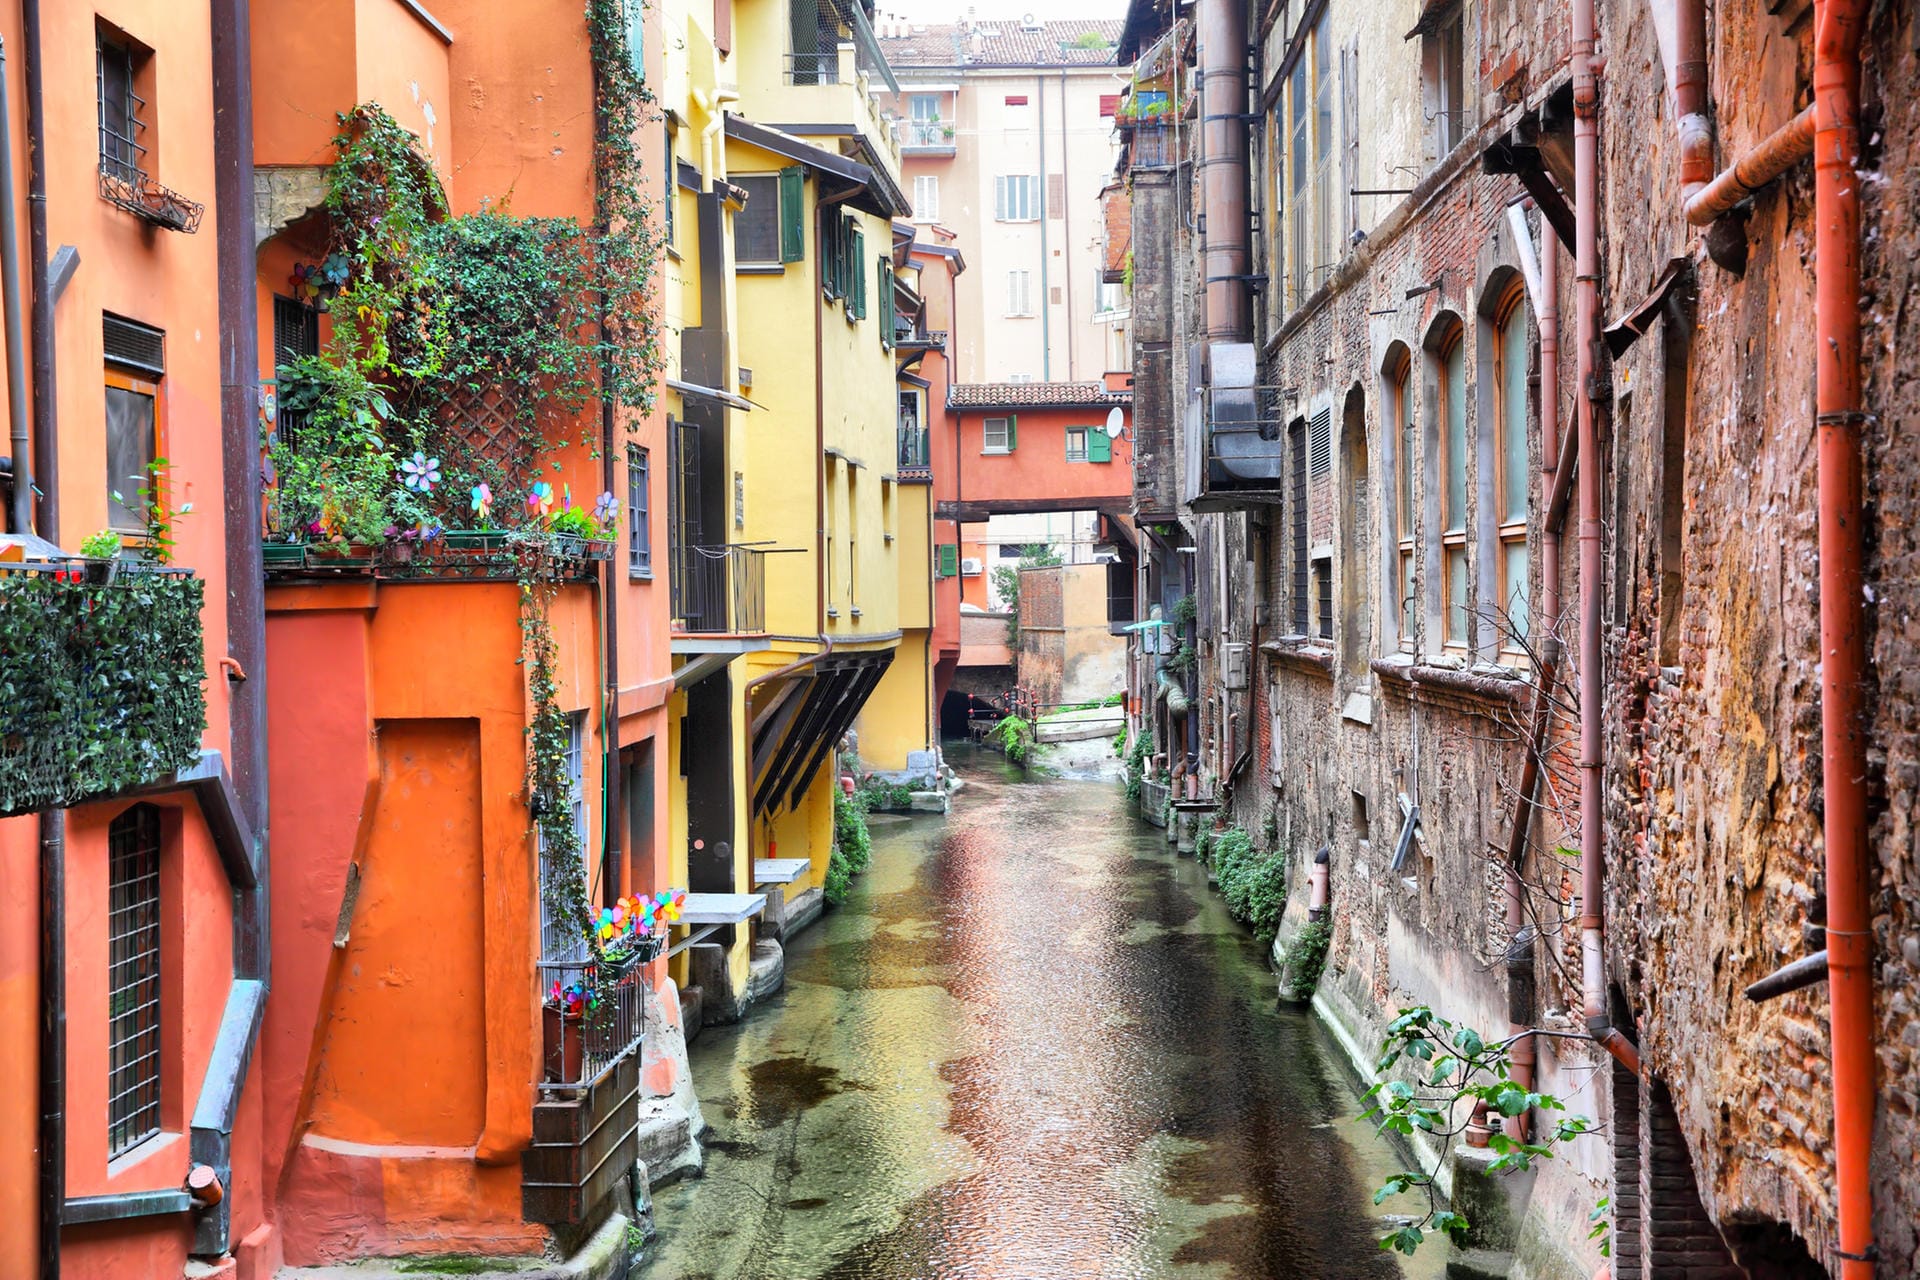 Kanal zwischen bunten Häusern: Die Hauptstadt der norditalienischen Region Emilia-Romagna ist Bologna.